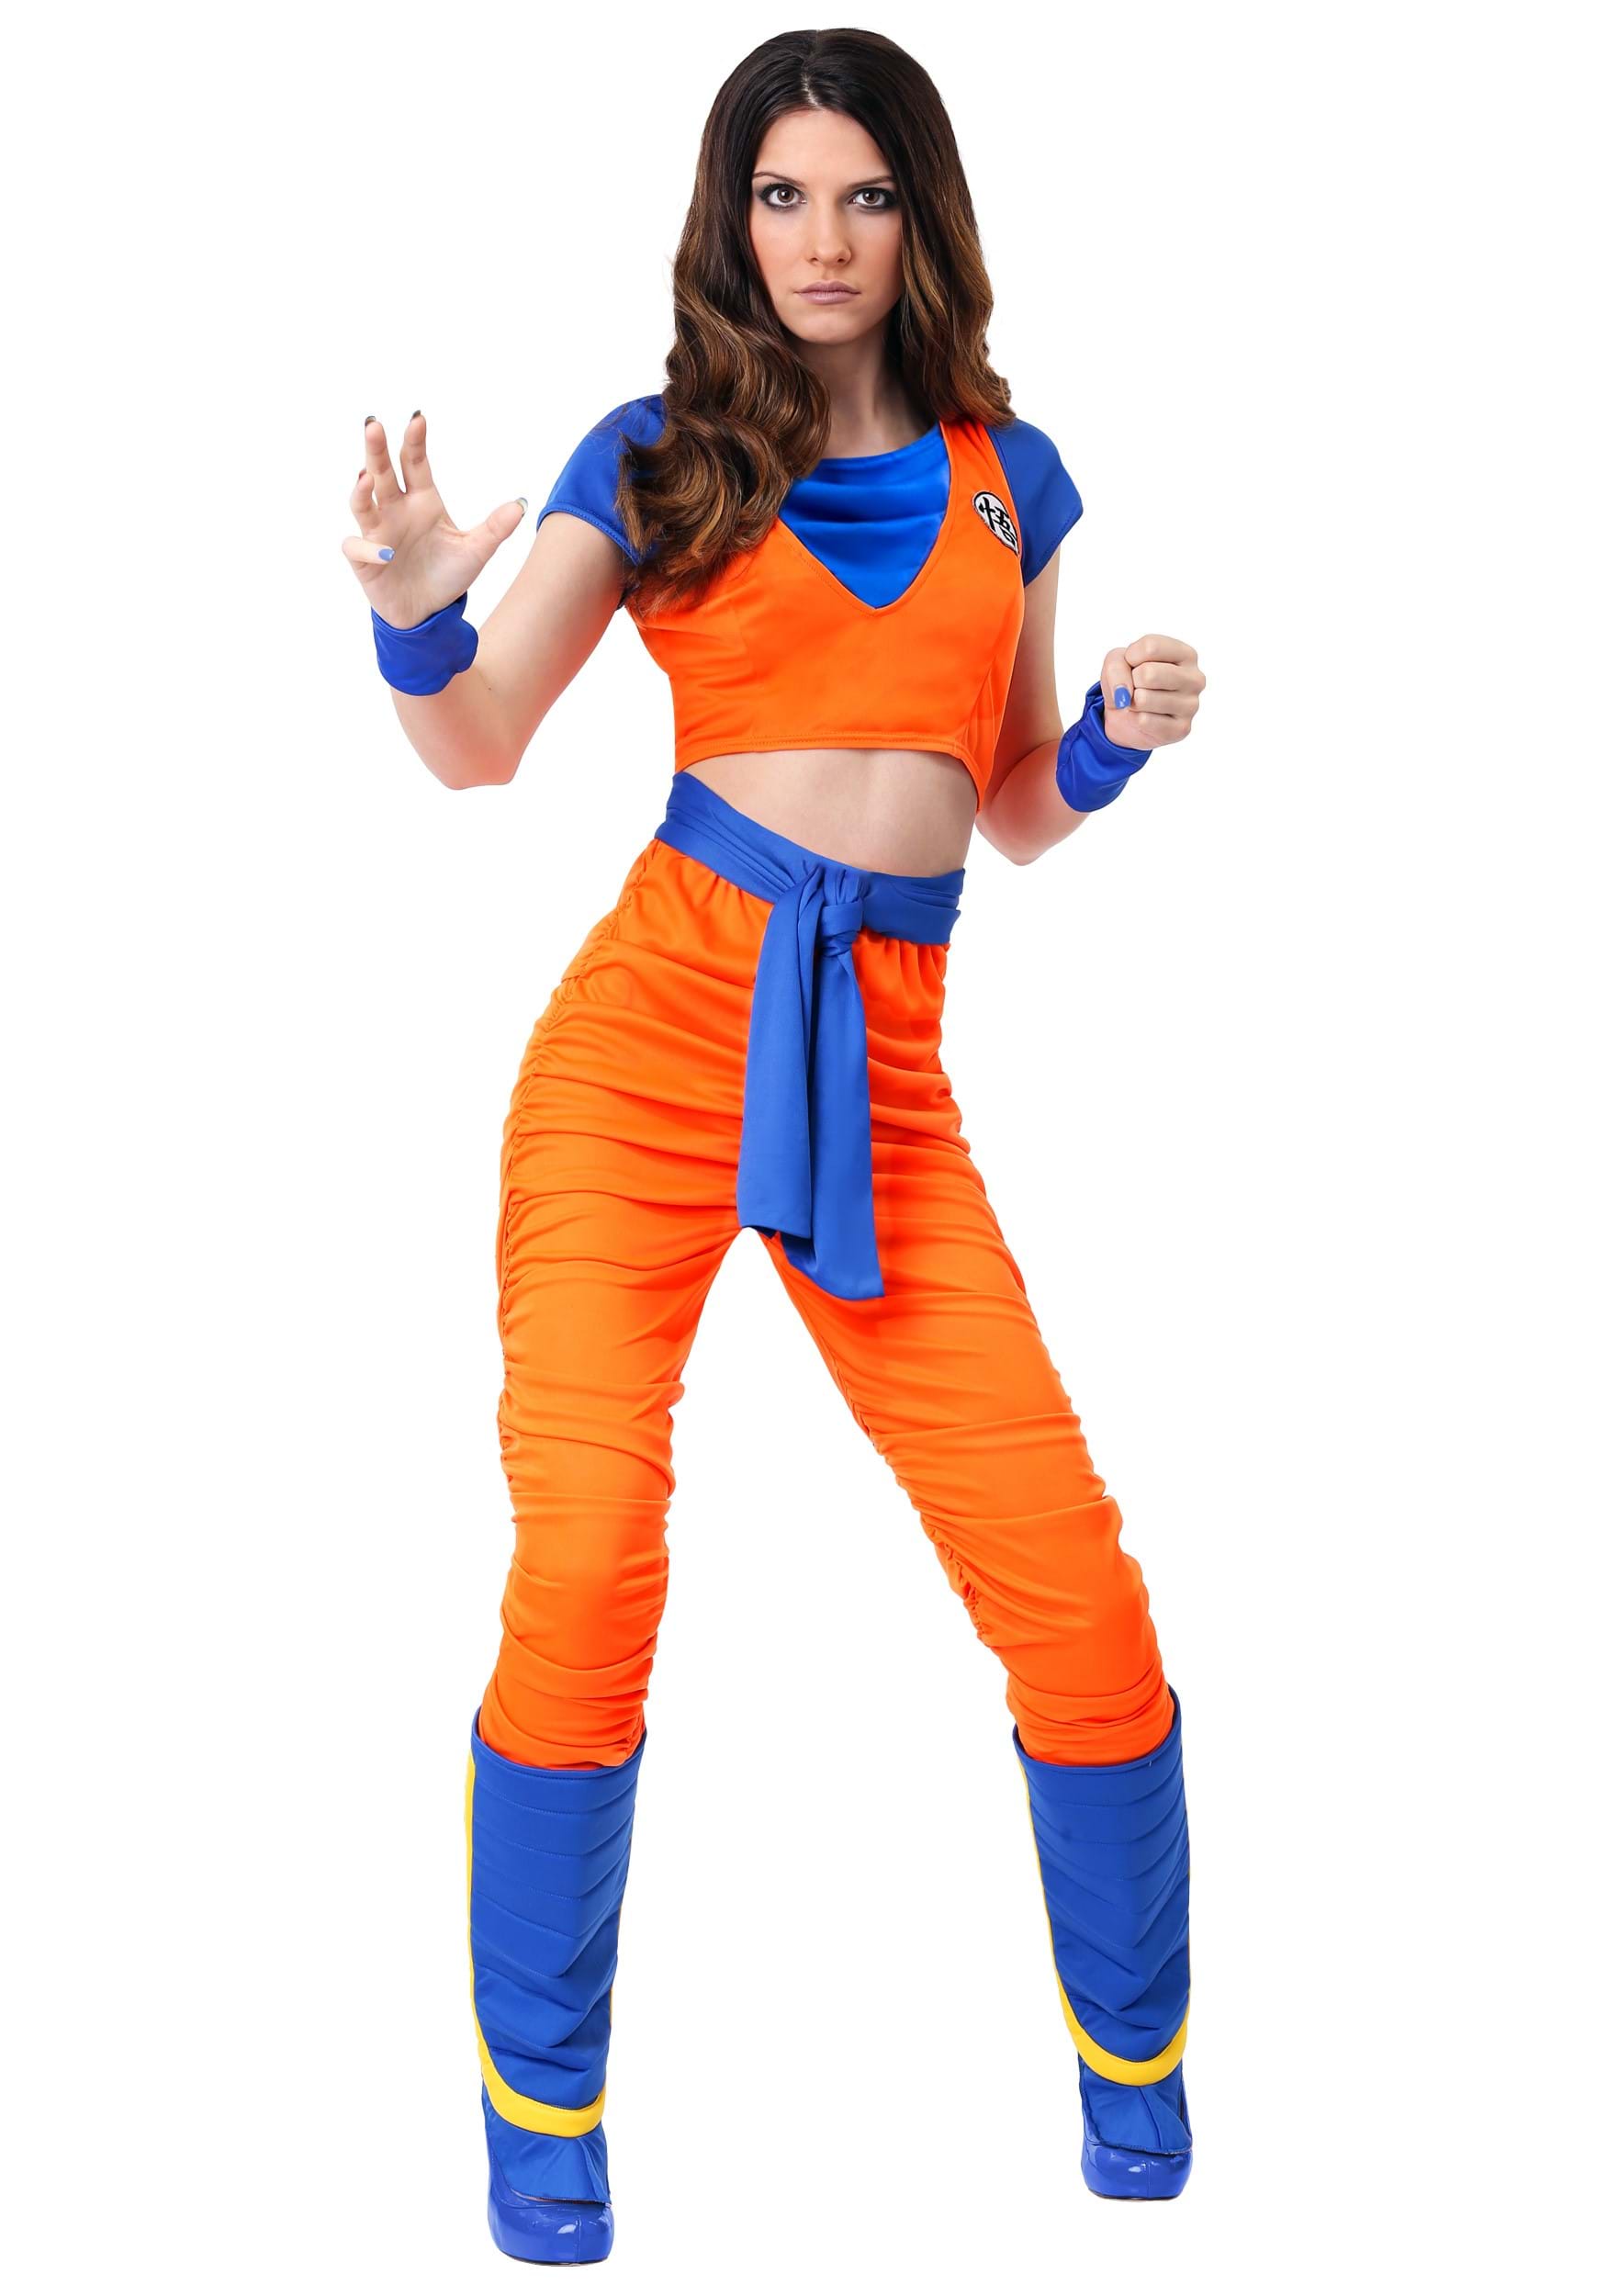 Dragon Ball Z Goku Costume for Women